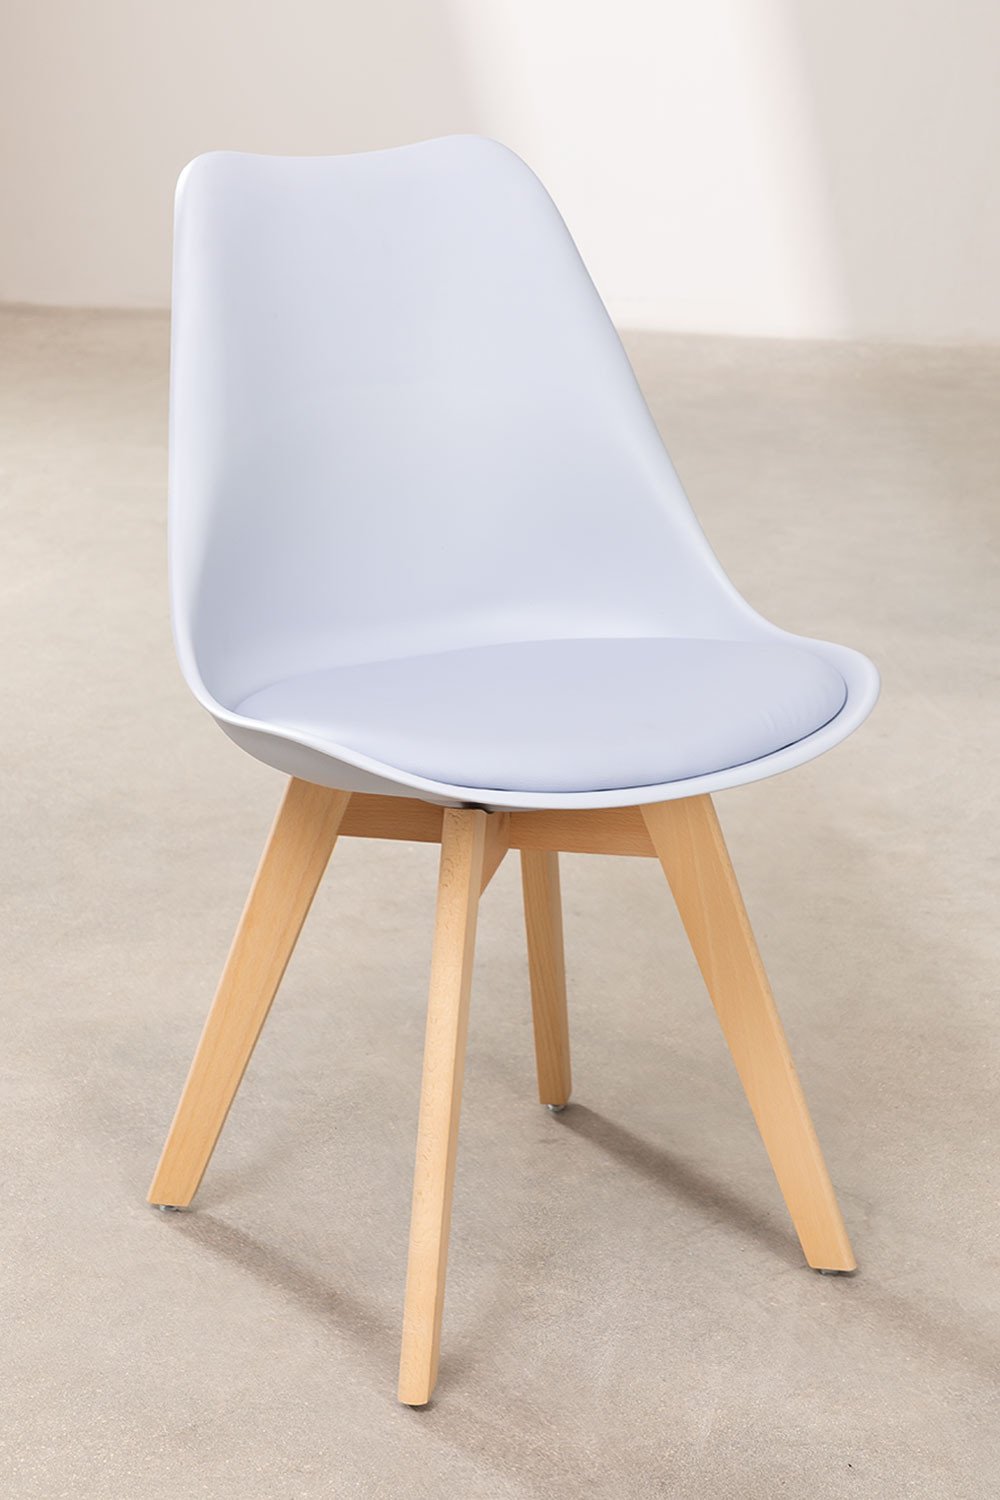 4 sillas BEECH Diseño Blancas